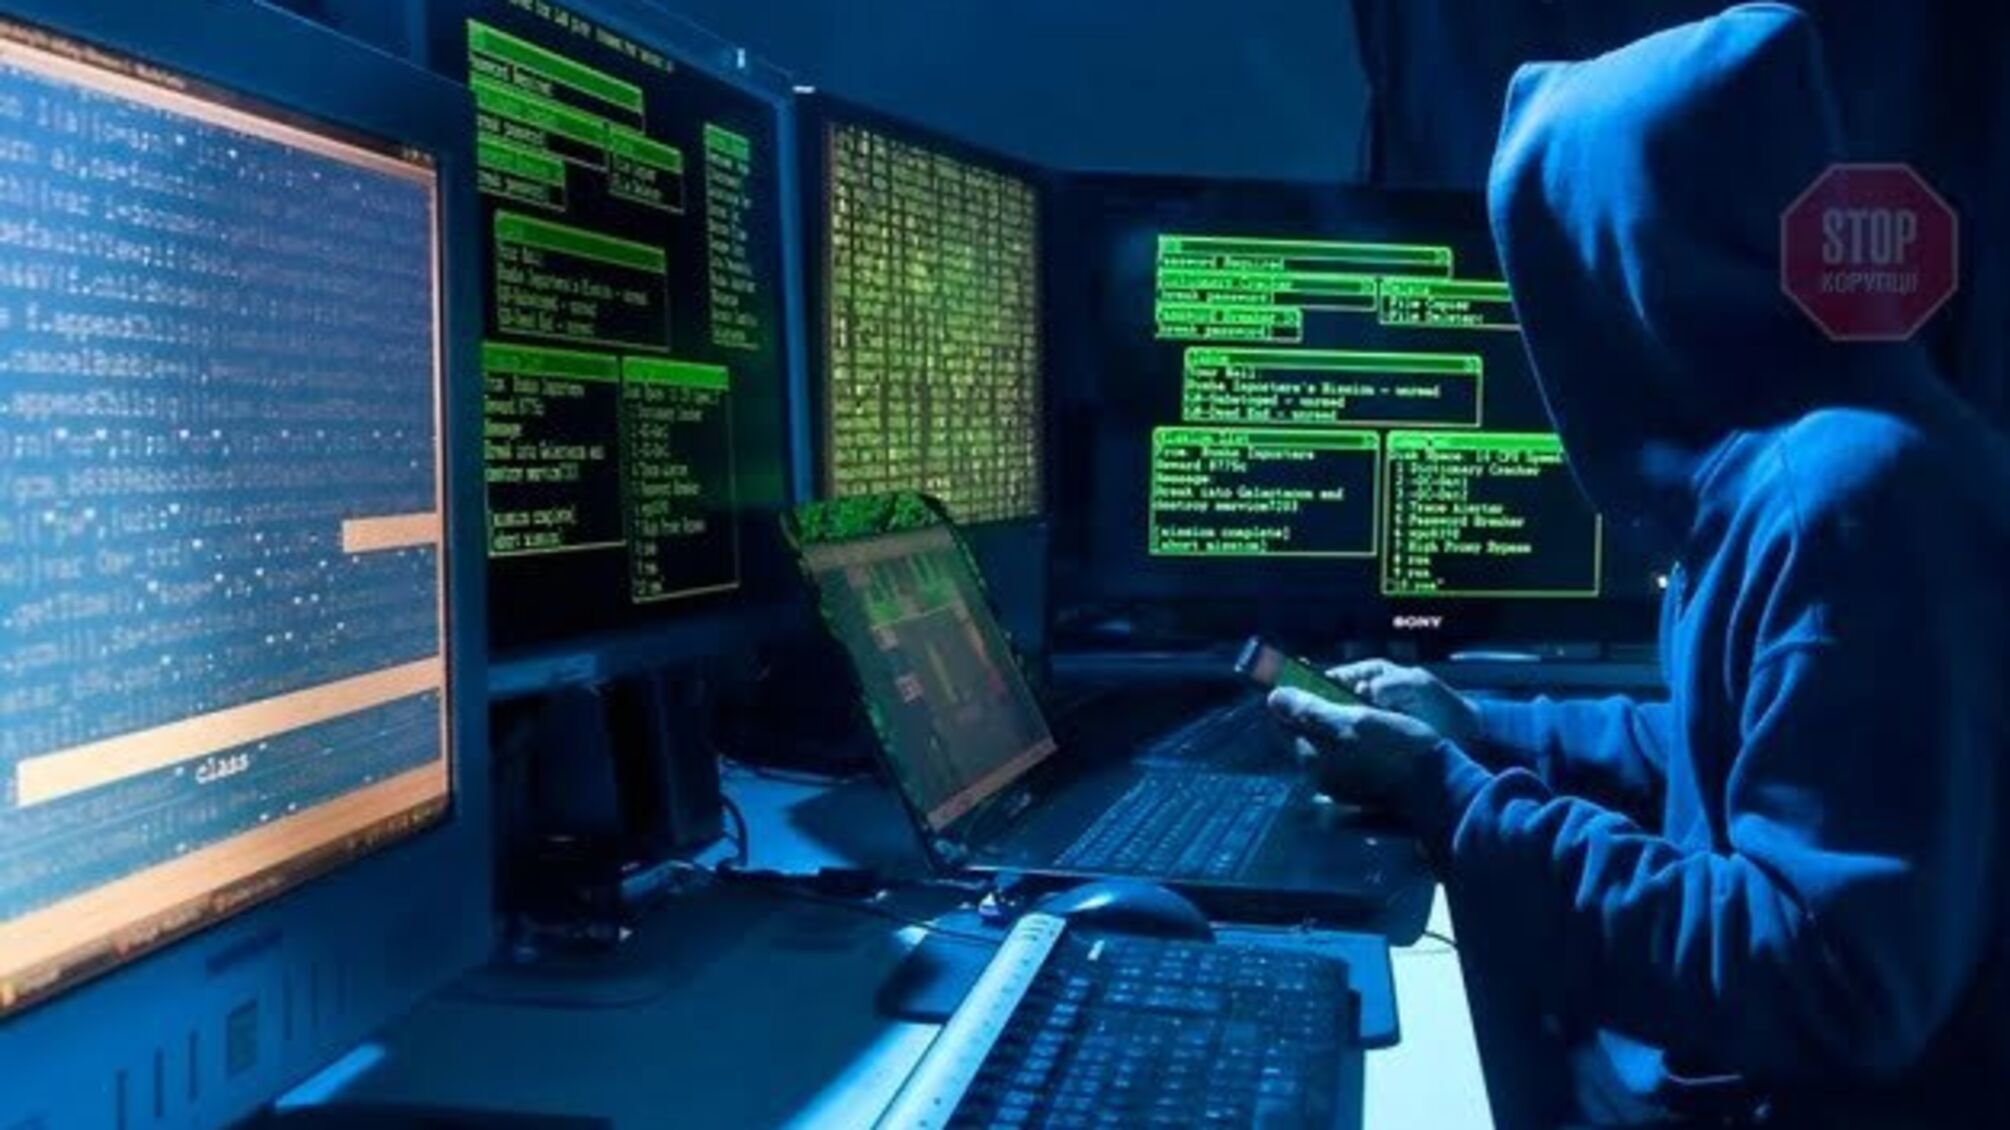 РНБО: На органи держвлади була здійснена кібератака, підозрюють хакерів з Росії 